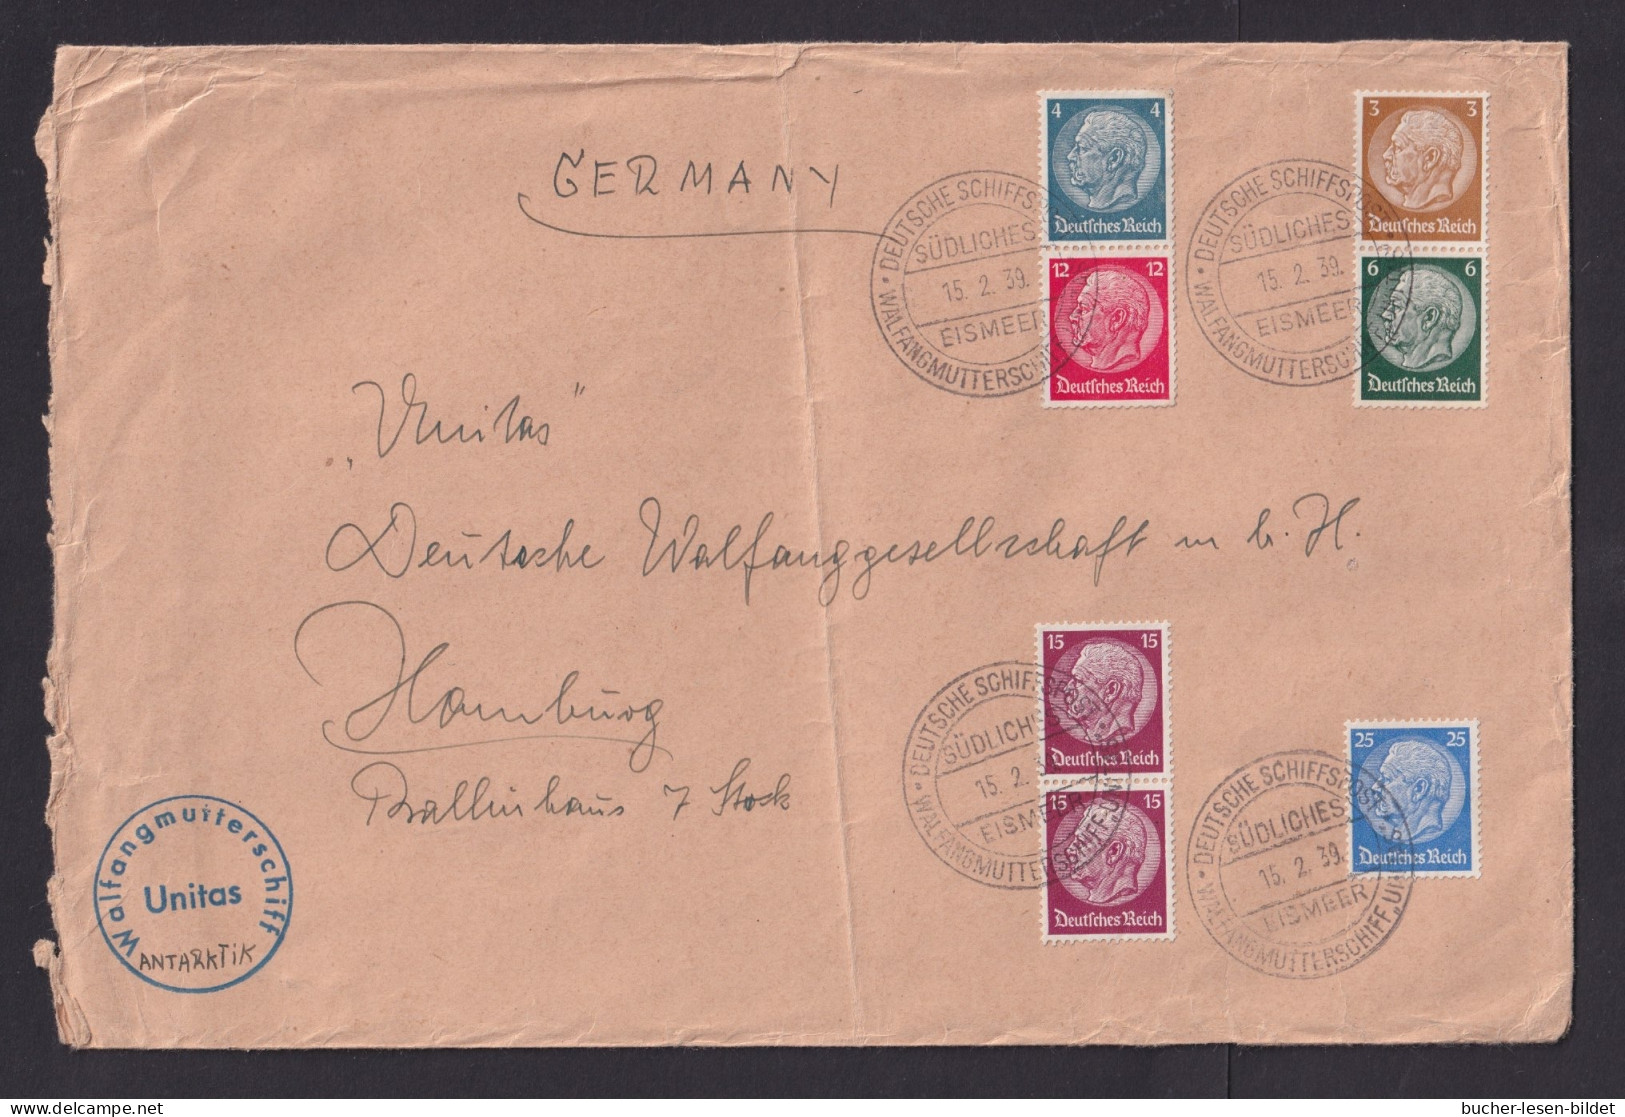 1939 - Bedarfsbrief Mit Schiffstempel "Walfangflotte Südliches Eismeer Unitas" - SEHR  SELTEN - Wale